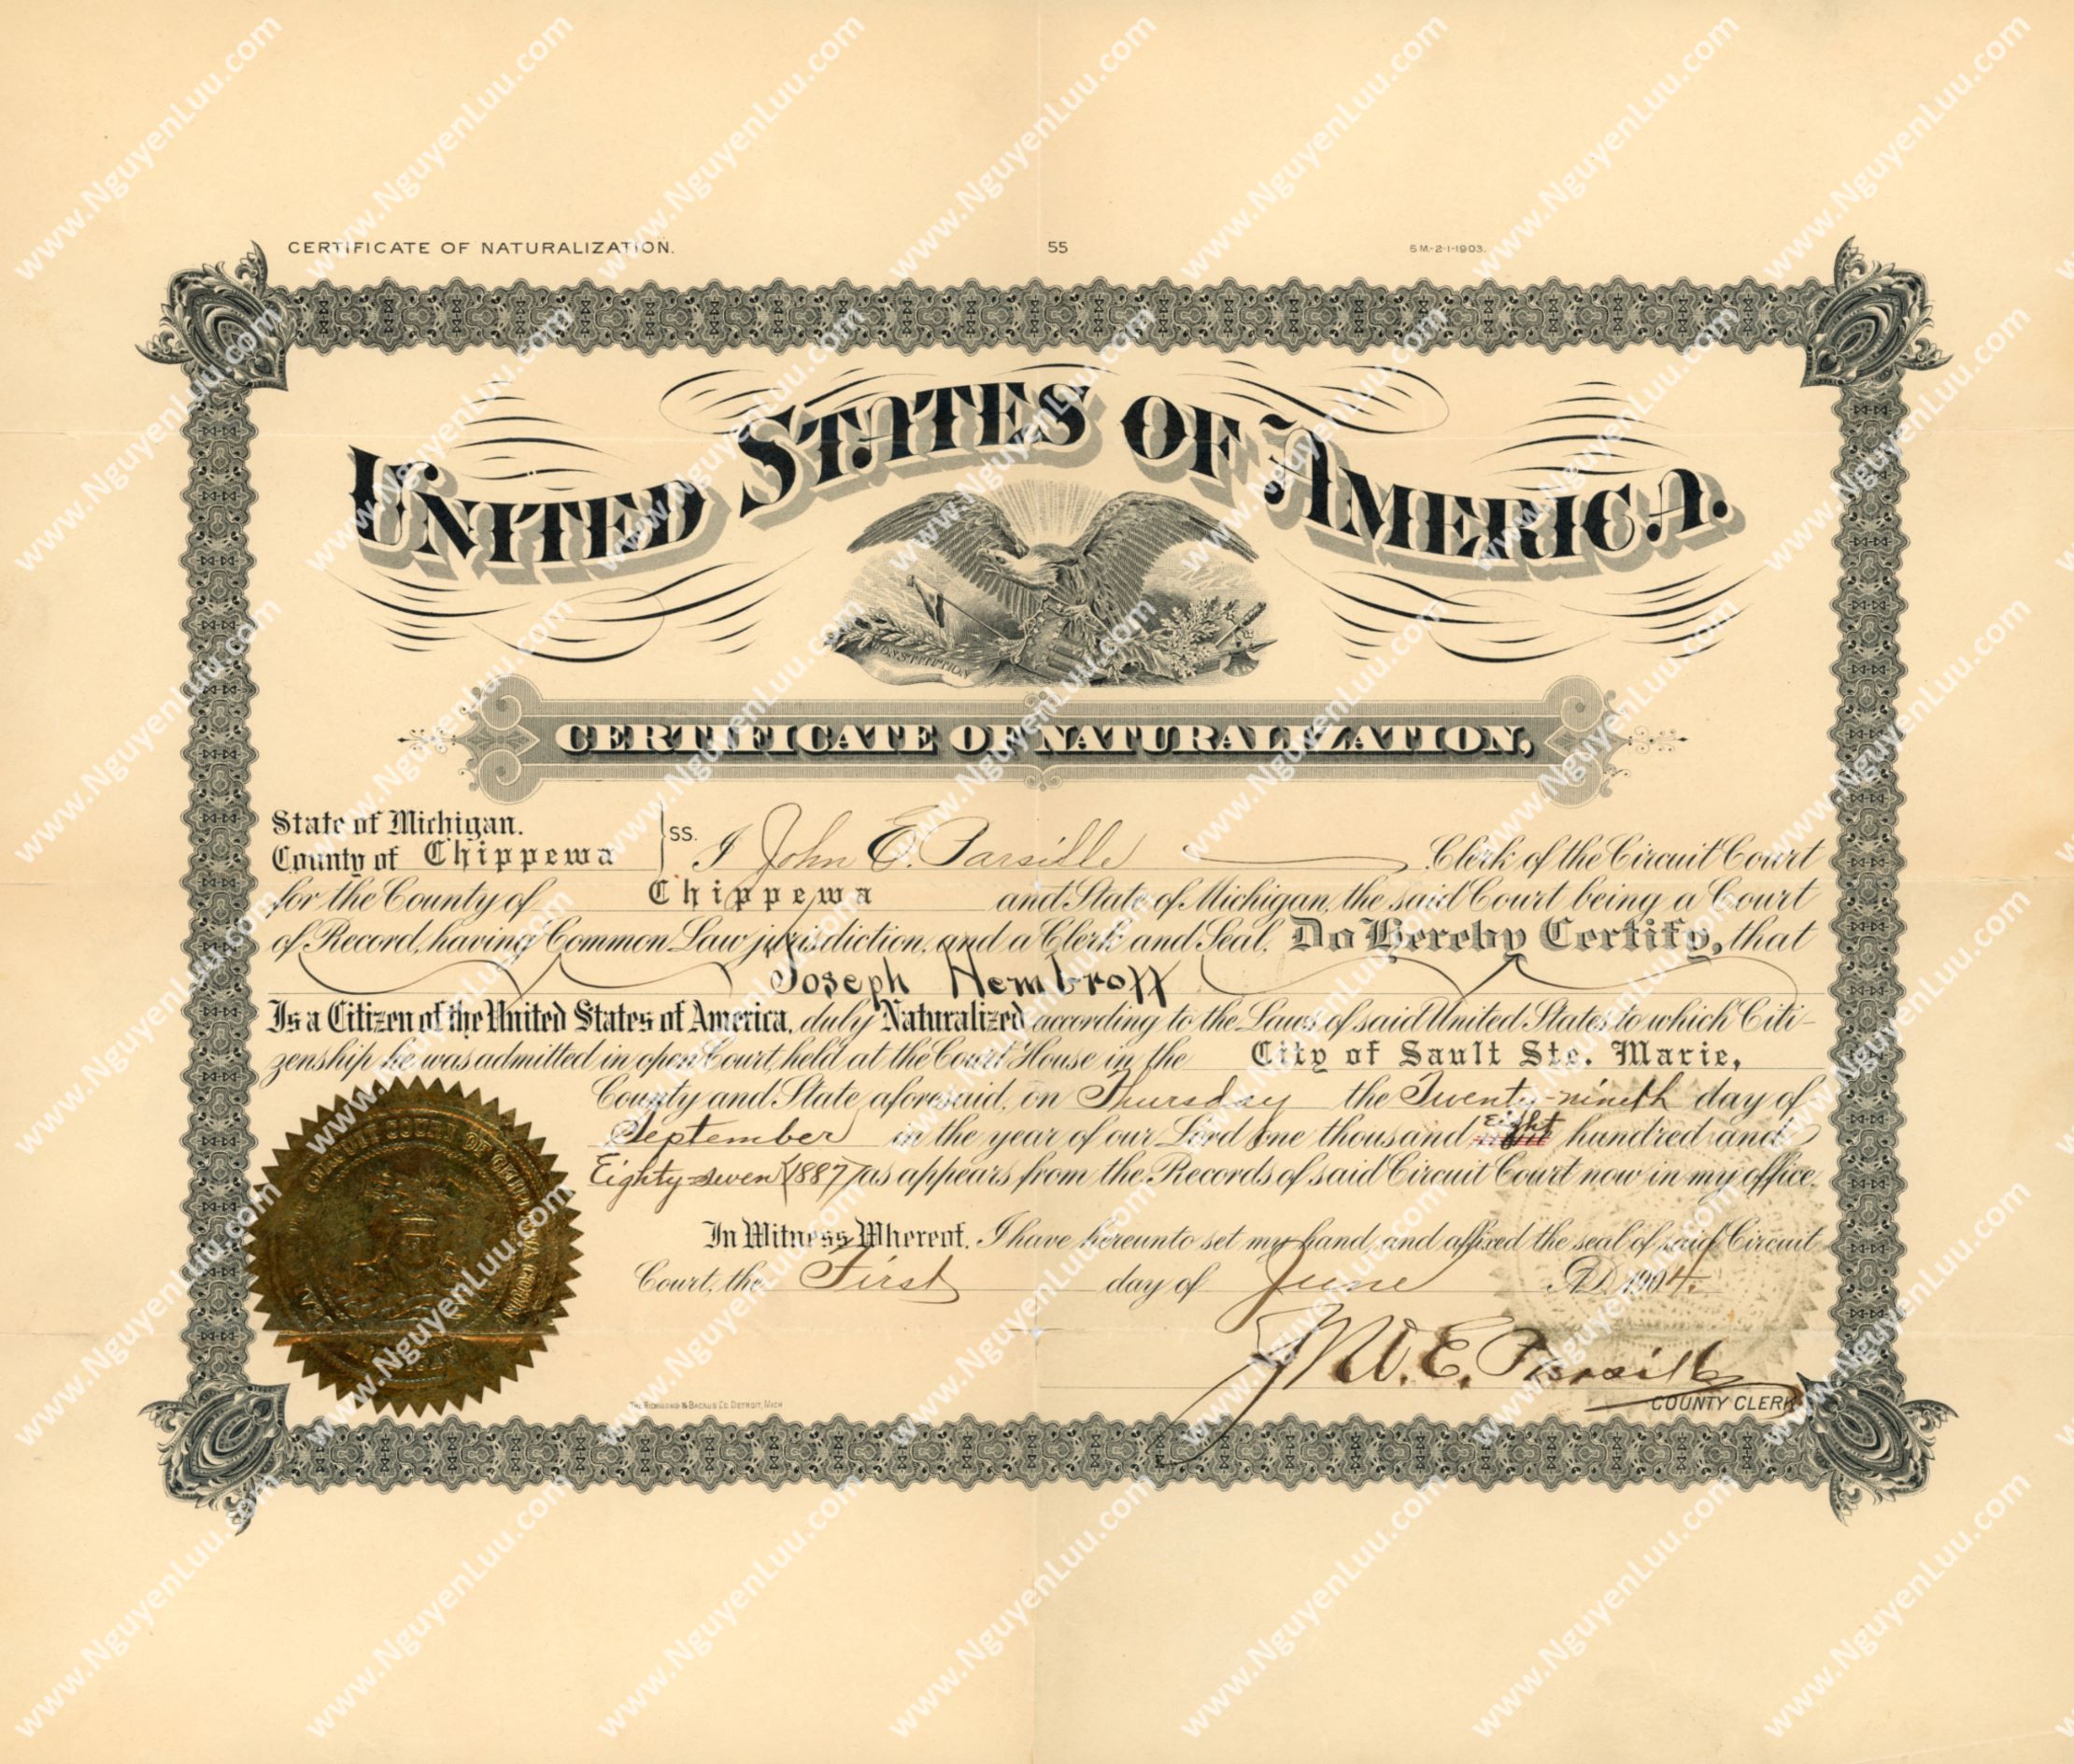 U.S. Certificate of Naturalization issued in the State of Michigan in 1887